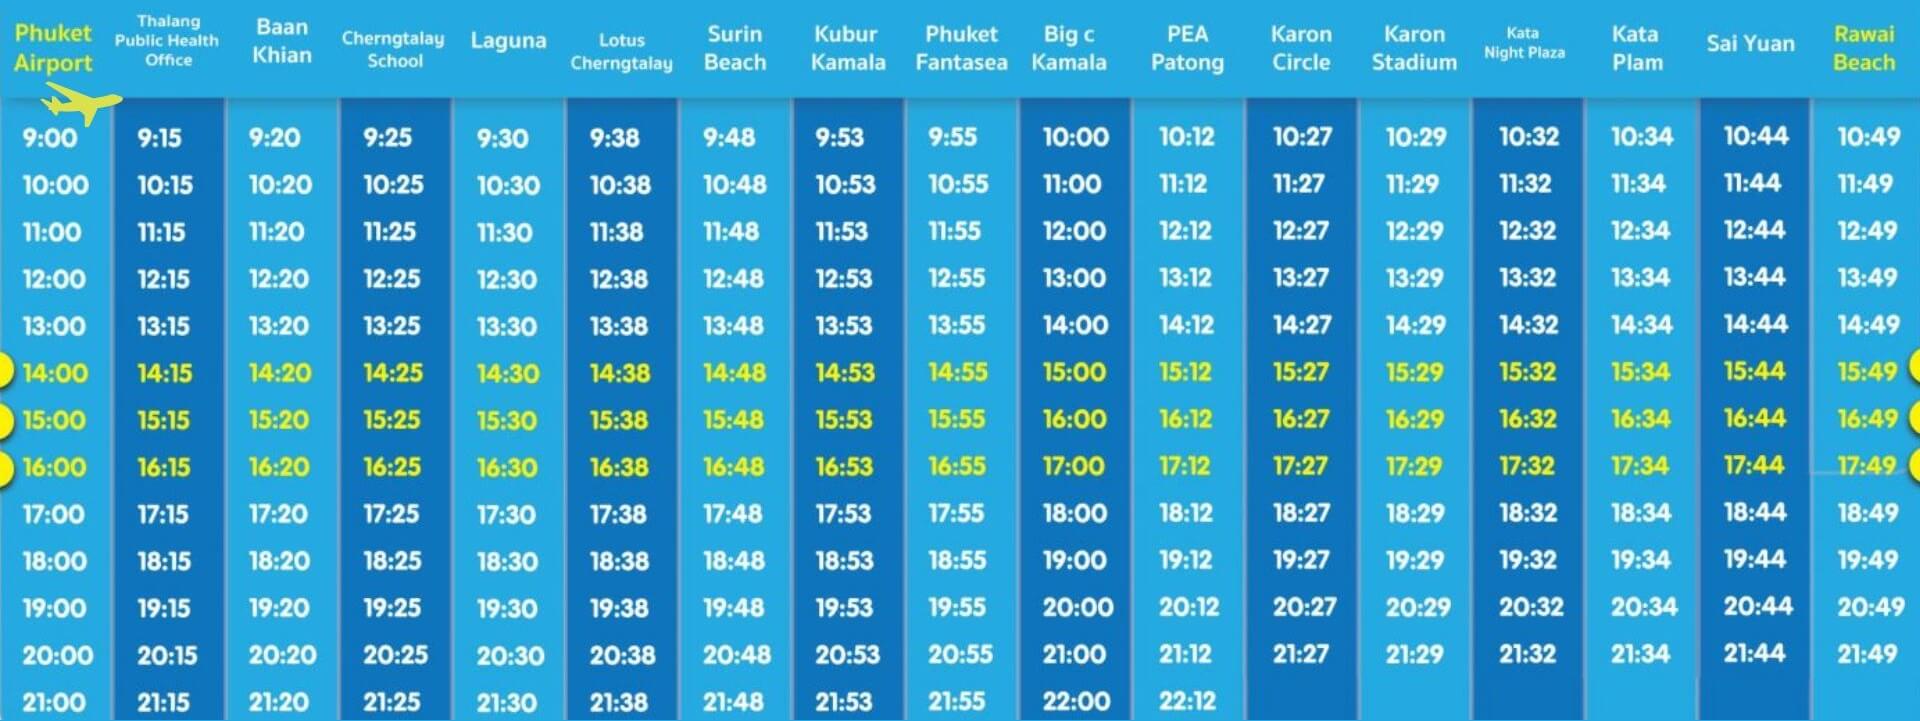 Расписание Smart bus из аэропорта Пхукета от 21 июля 2022 г